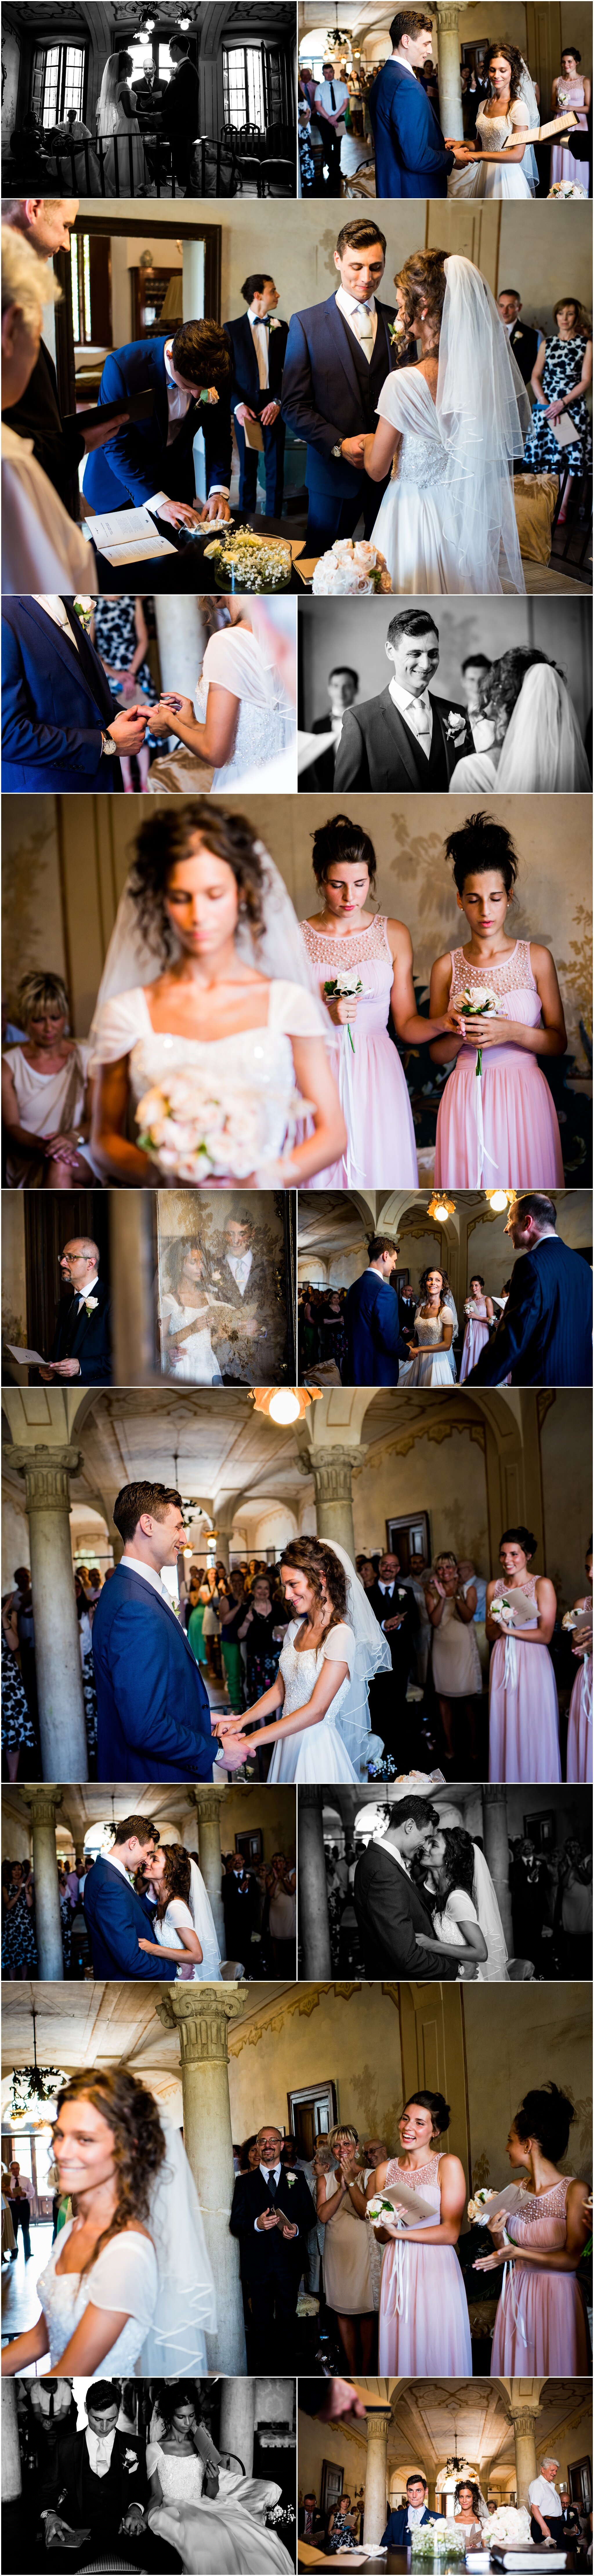 tuscany-italy-wedding-ricky-baillie-photography-wedding-photographers-in-tuscany_0004.jpg